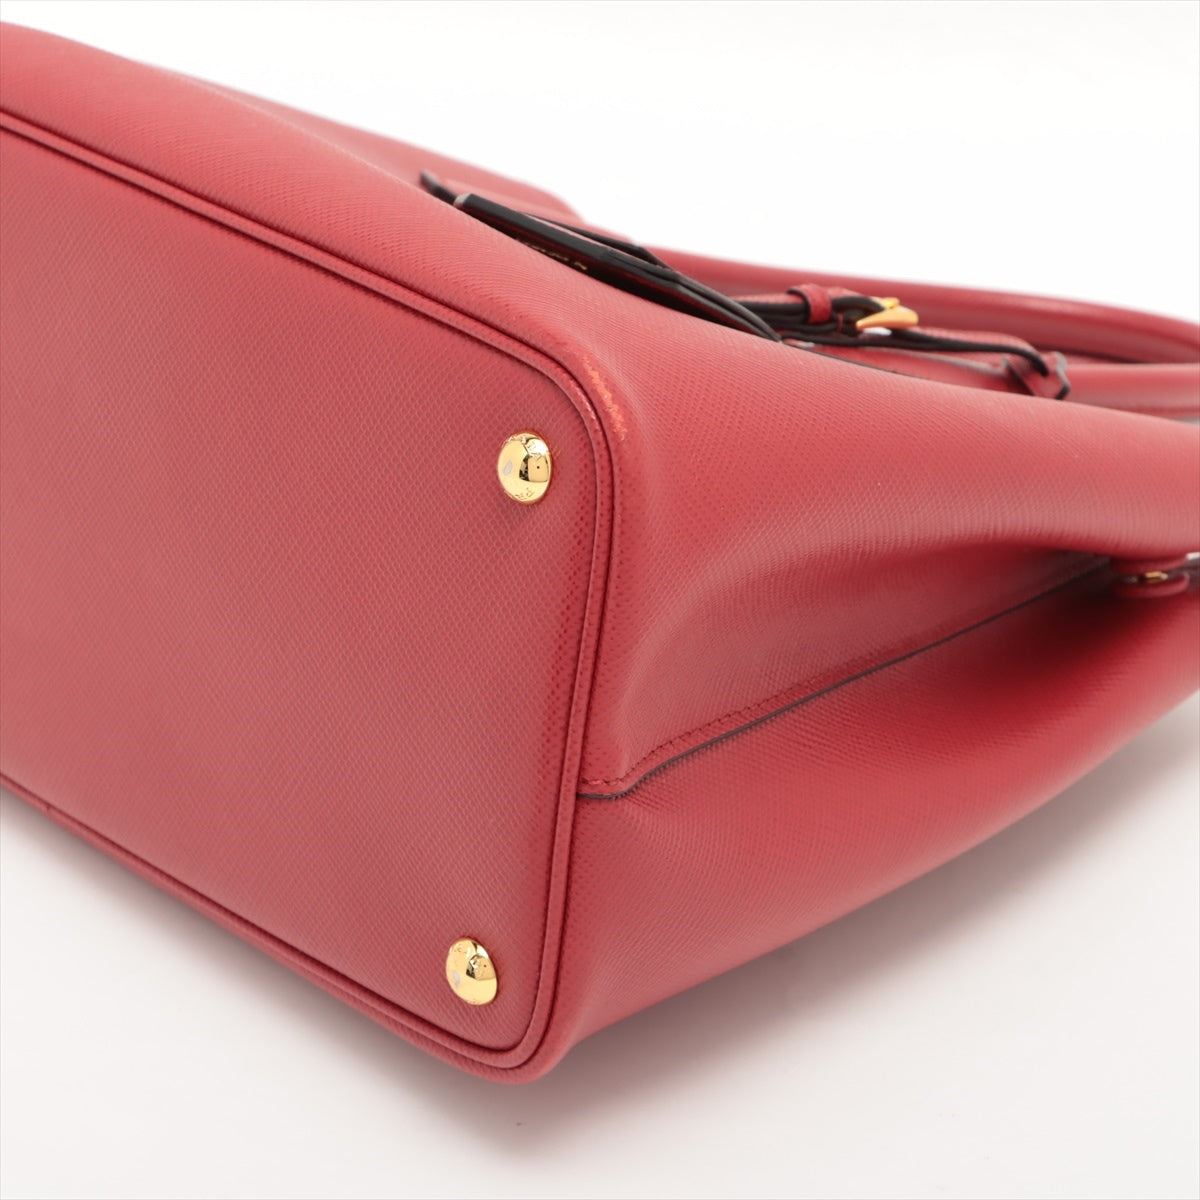 Prada Saffiano 2way handbag Red